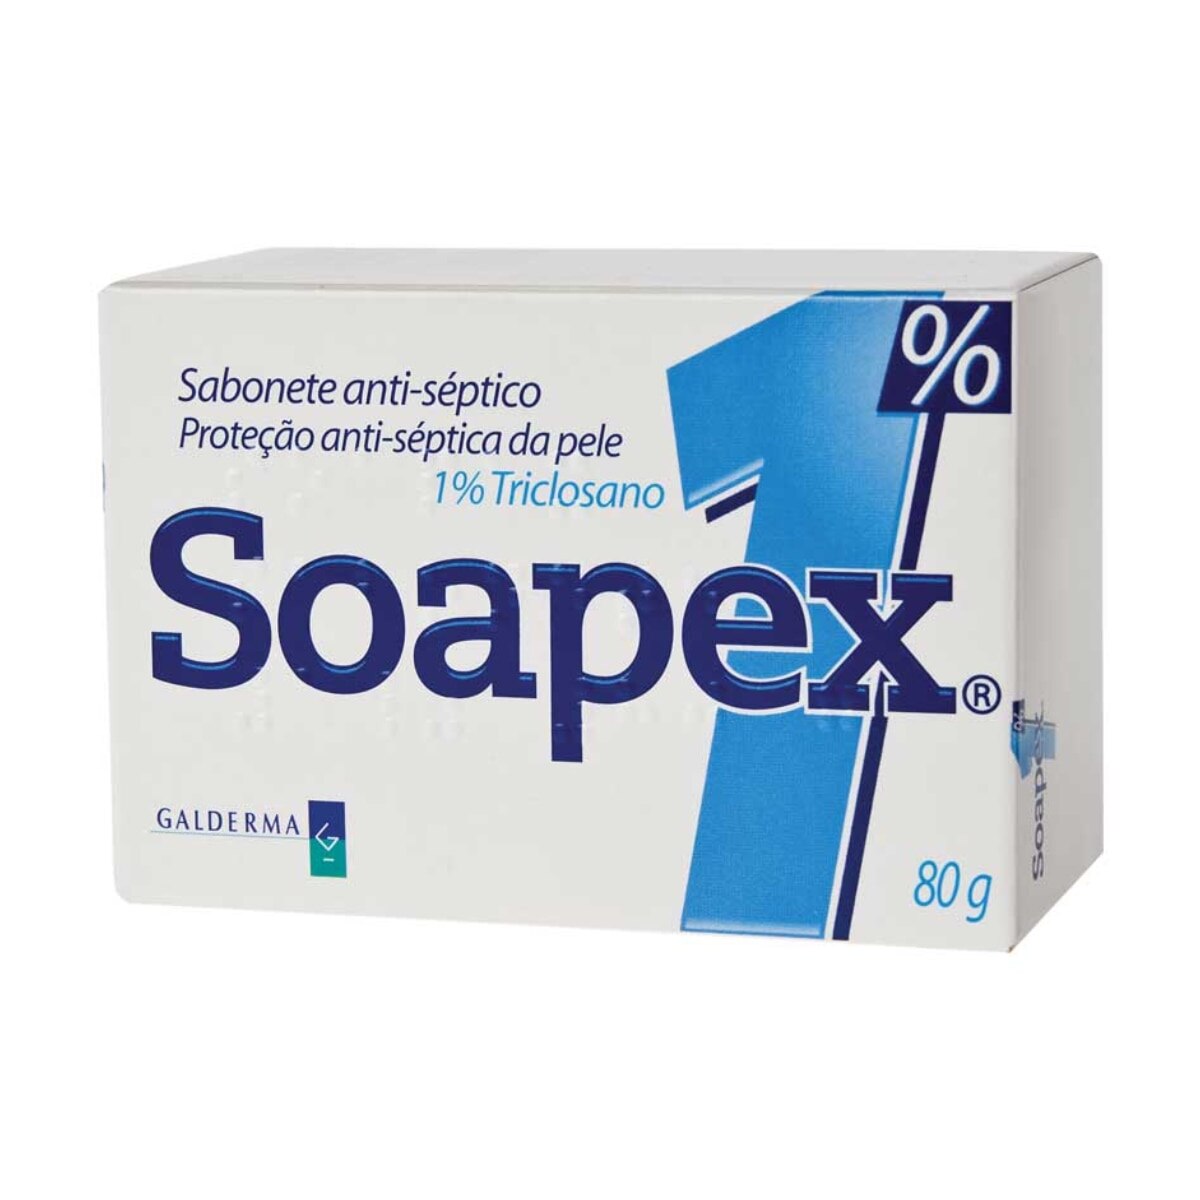 Sabonete em Barra Soapex 1% Triclosano 80g